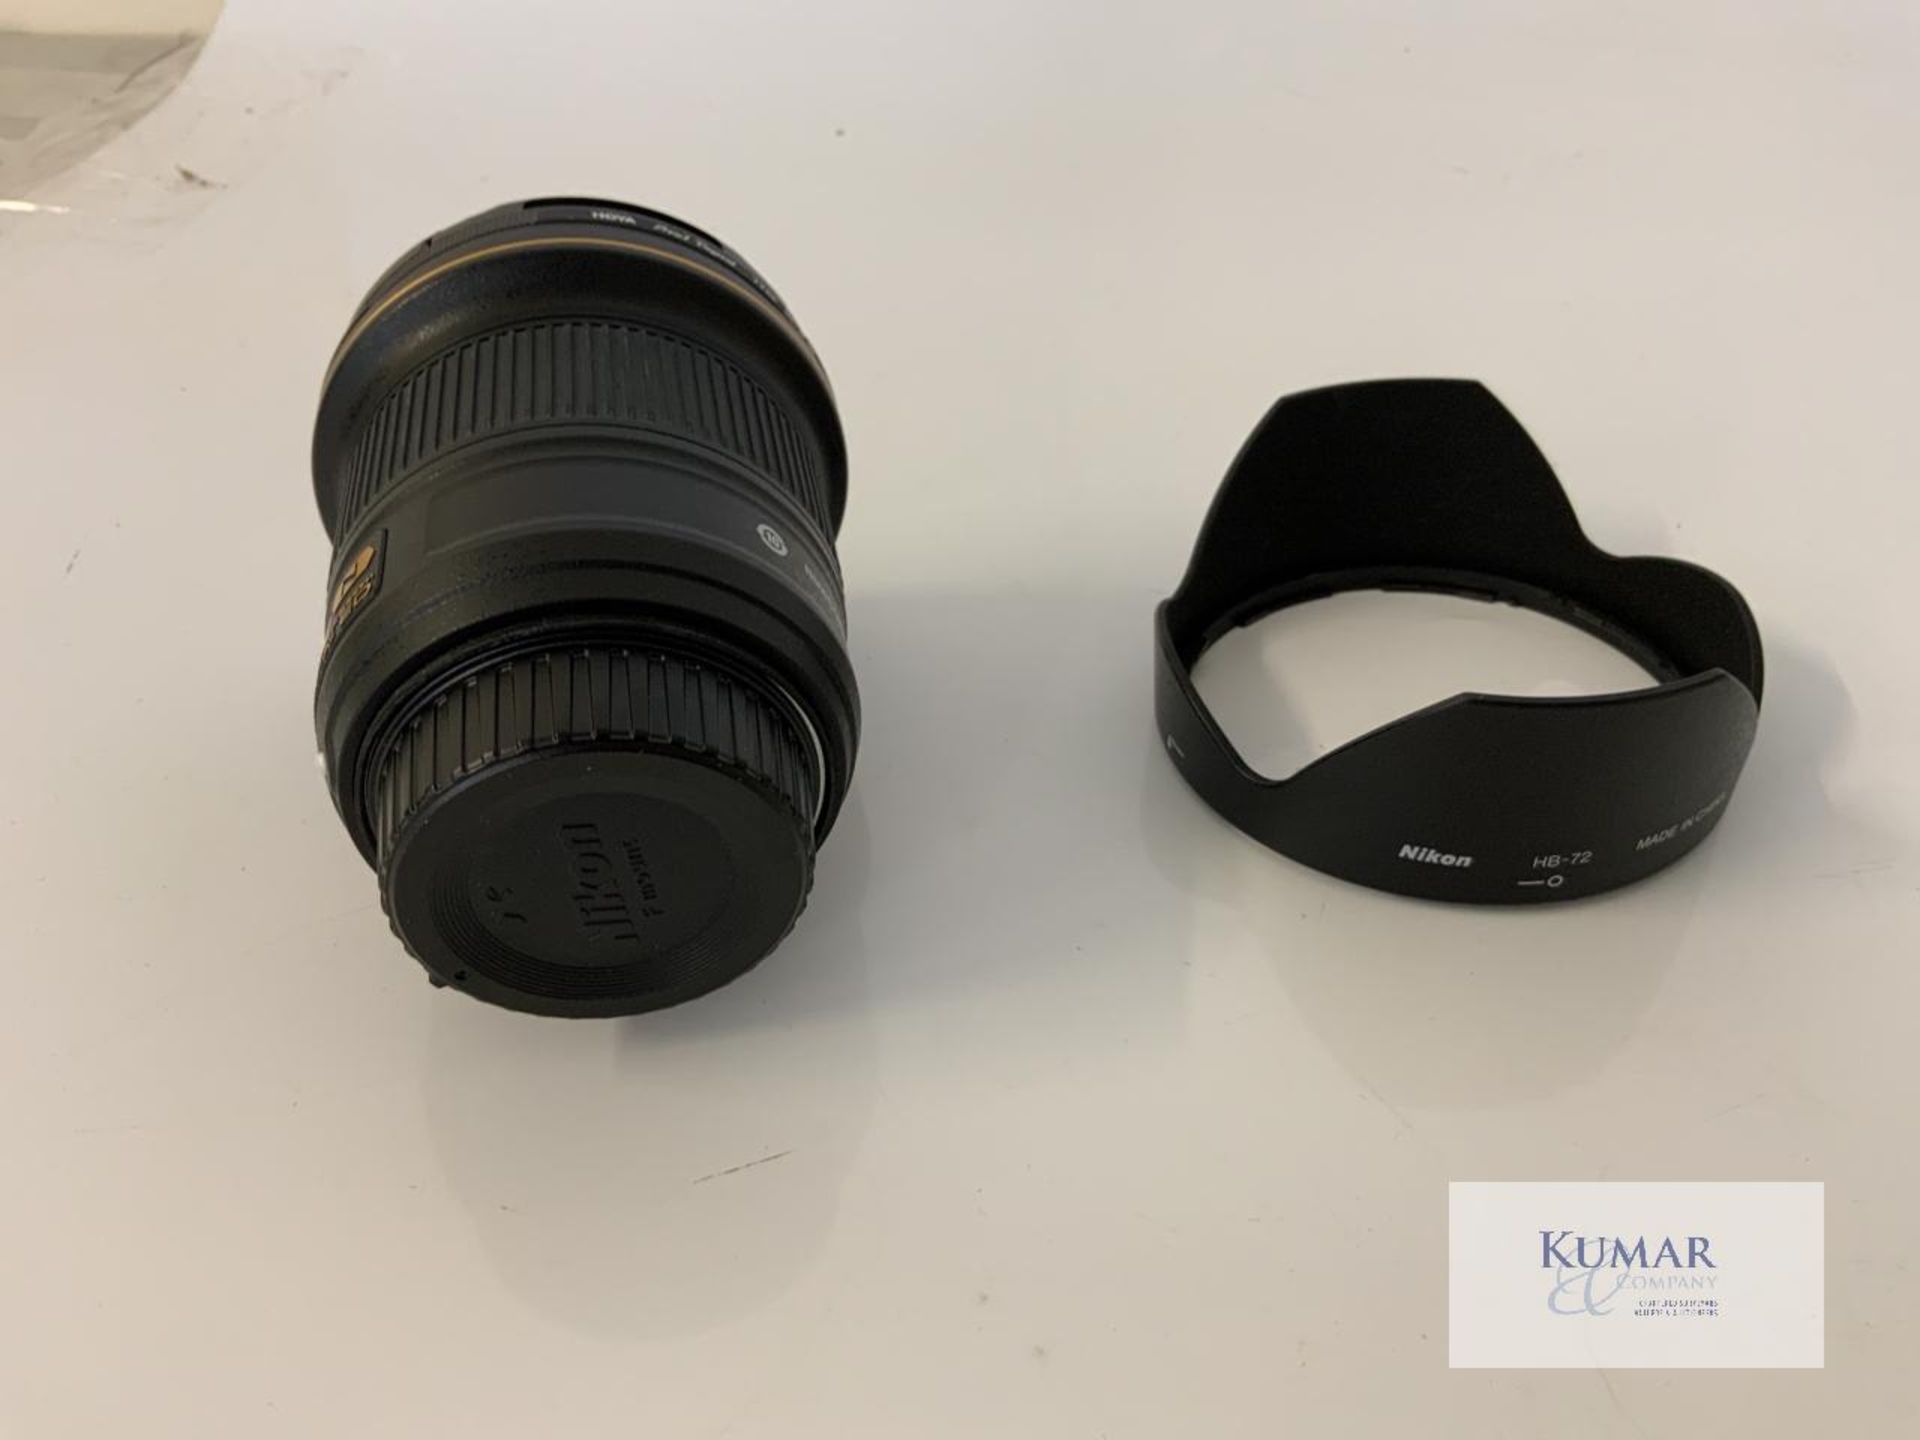 Nikon AF-S Nikkor 20mm 1:1.8G ED Zoom Lens with Nikon HB 72 Lens Hood & Carry Case - Image 5 of 10